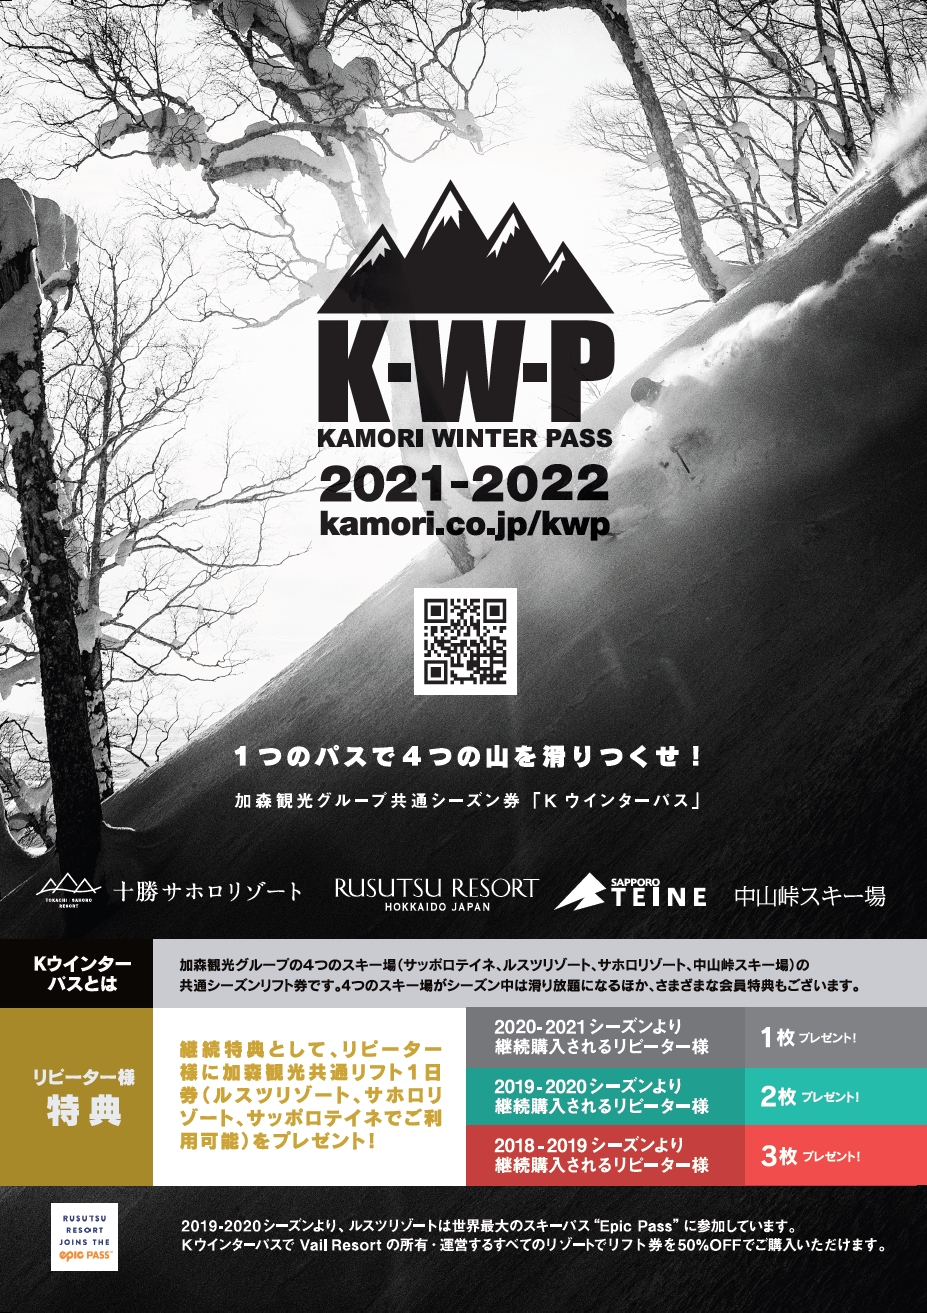 加森観光グループ共通リフトシーズン券『KWP 2021-2022』好評販売中